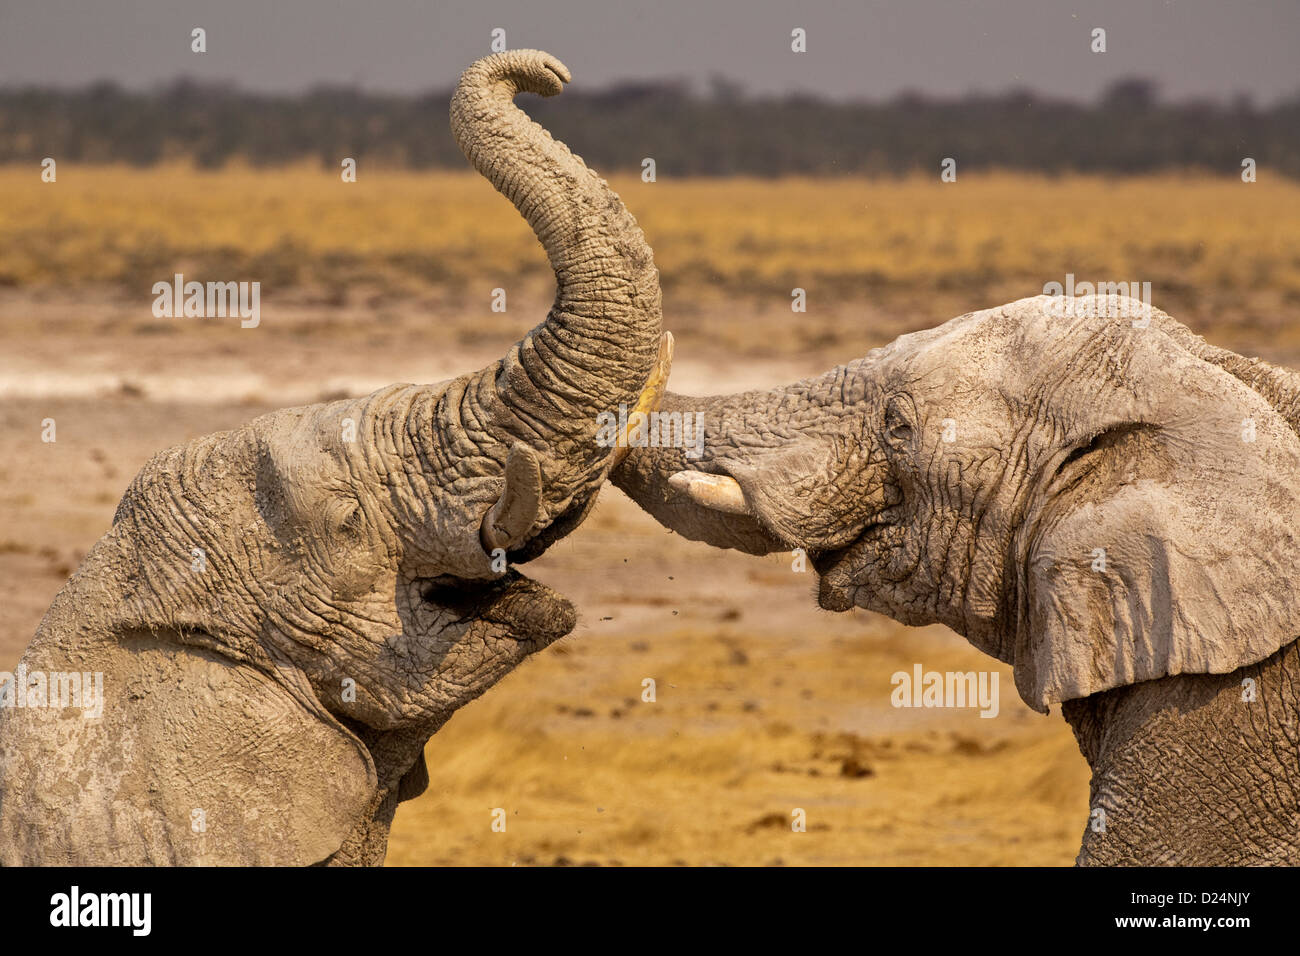 ELEPHANTS Loxodonta africanus, two elephants laughing and socializing touching trunks Stock Photo